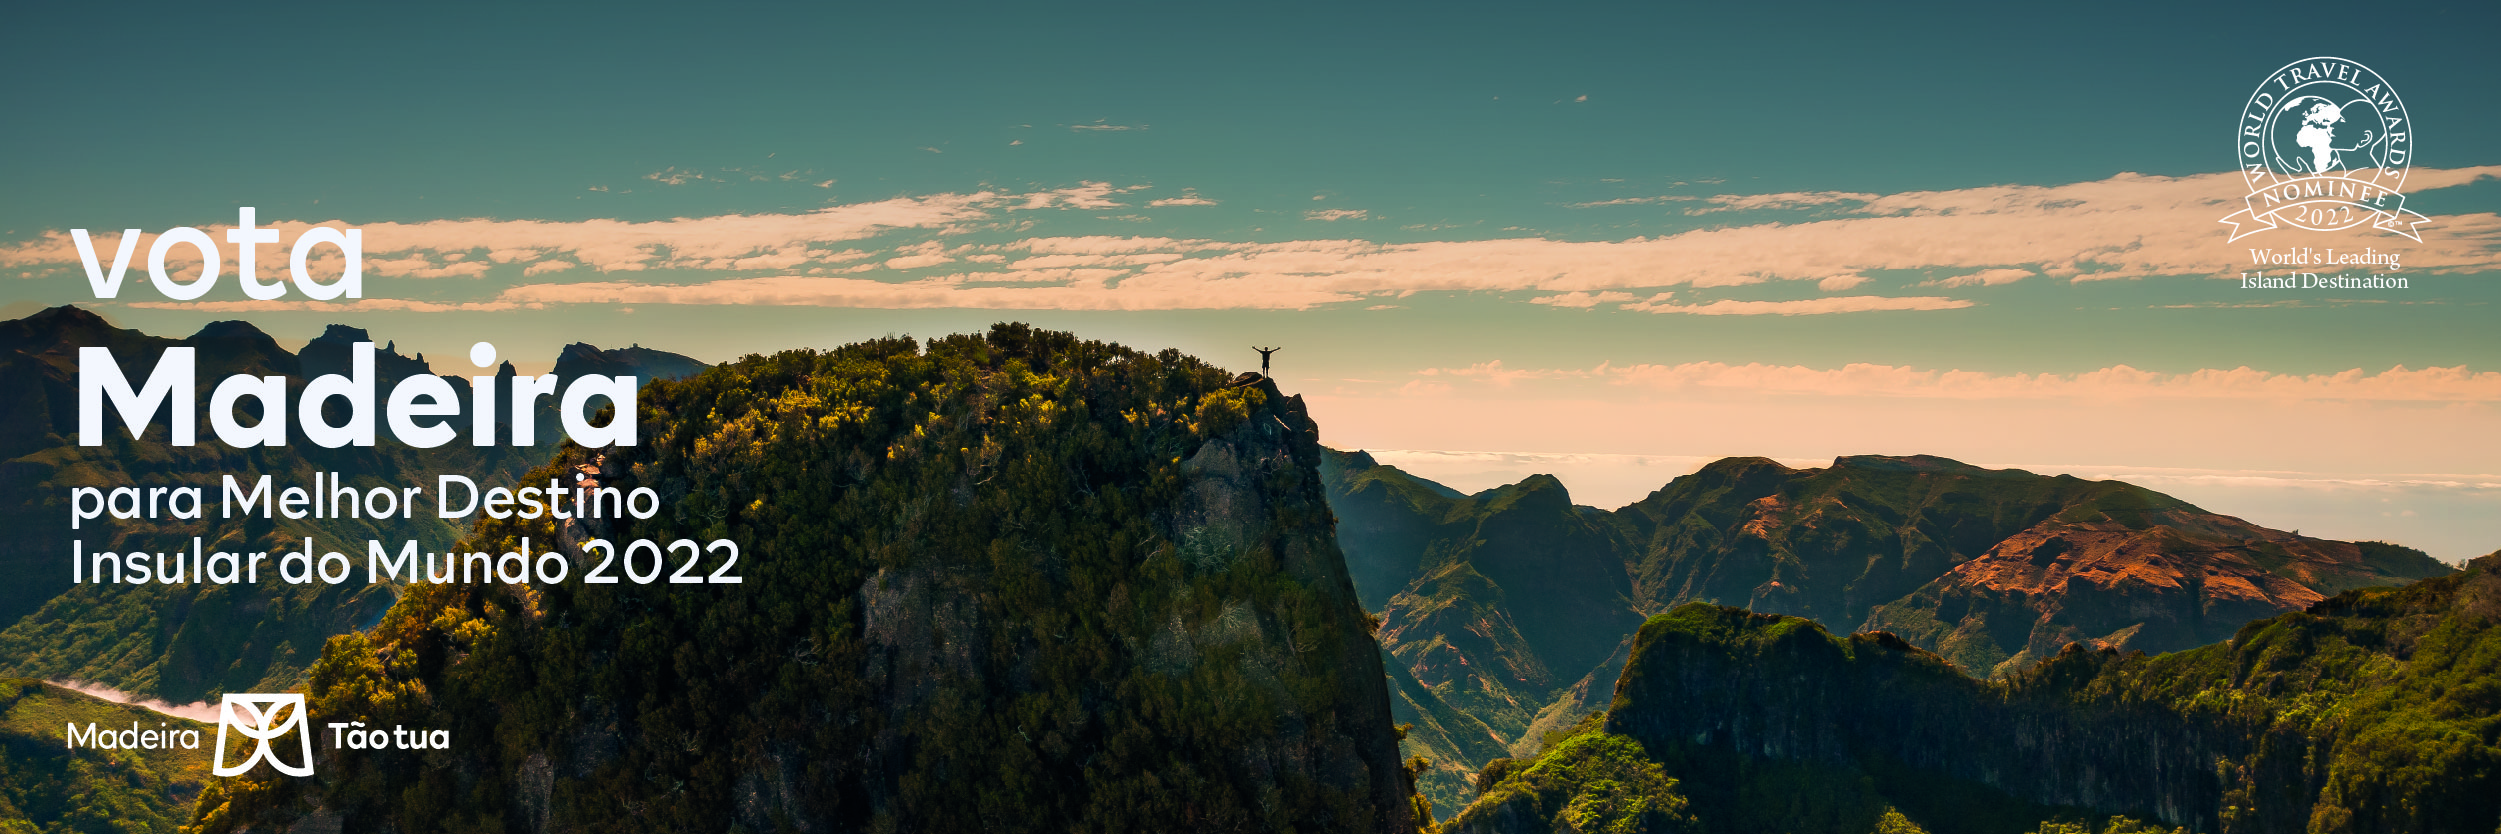 Madeira nomeada como Melhor Destino Insular do Mundo 2022